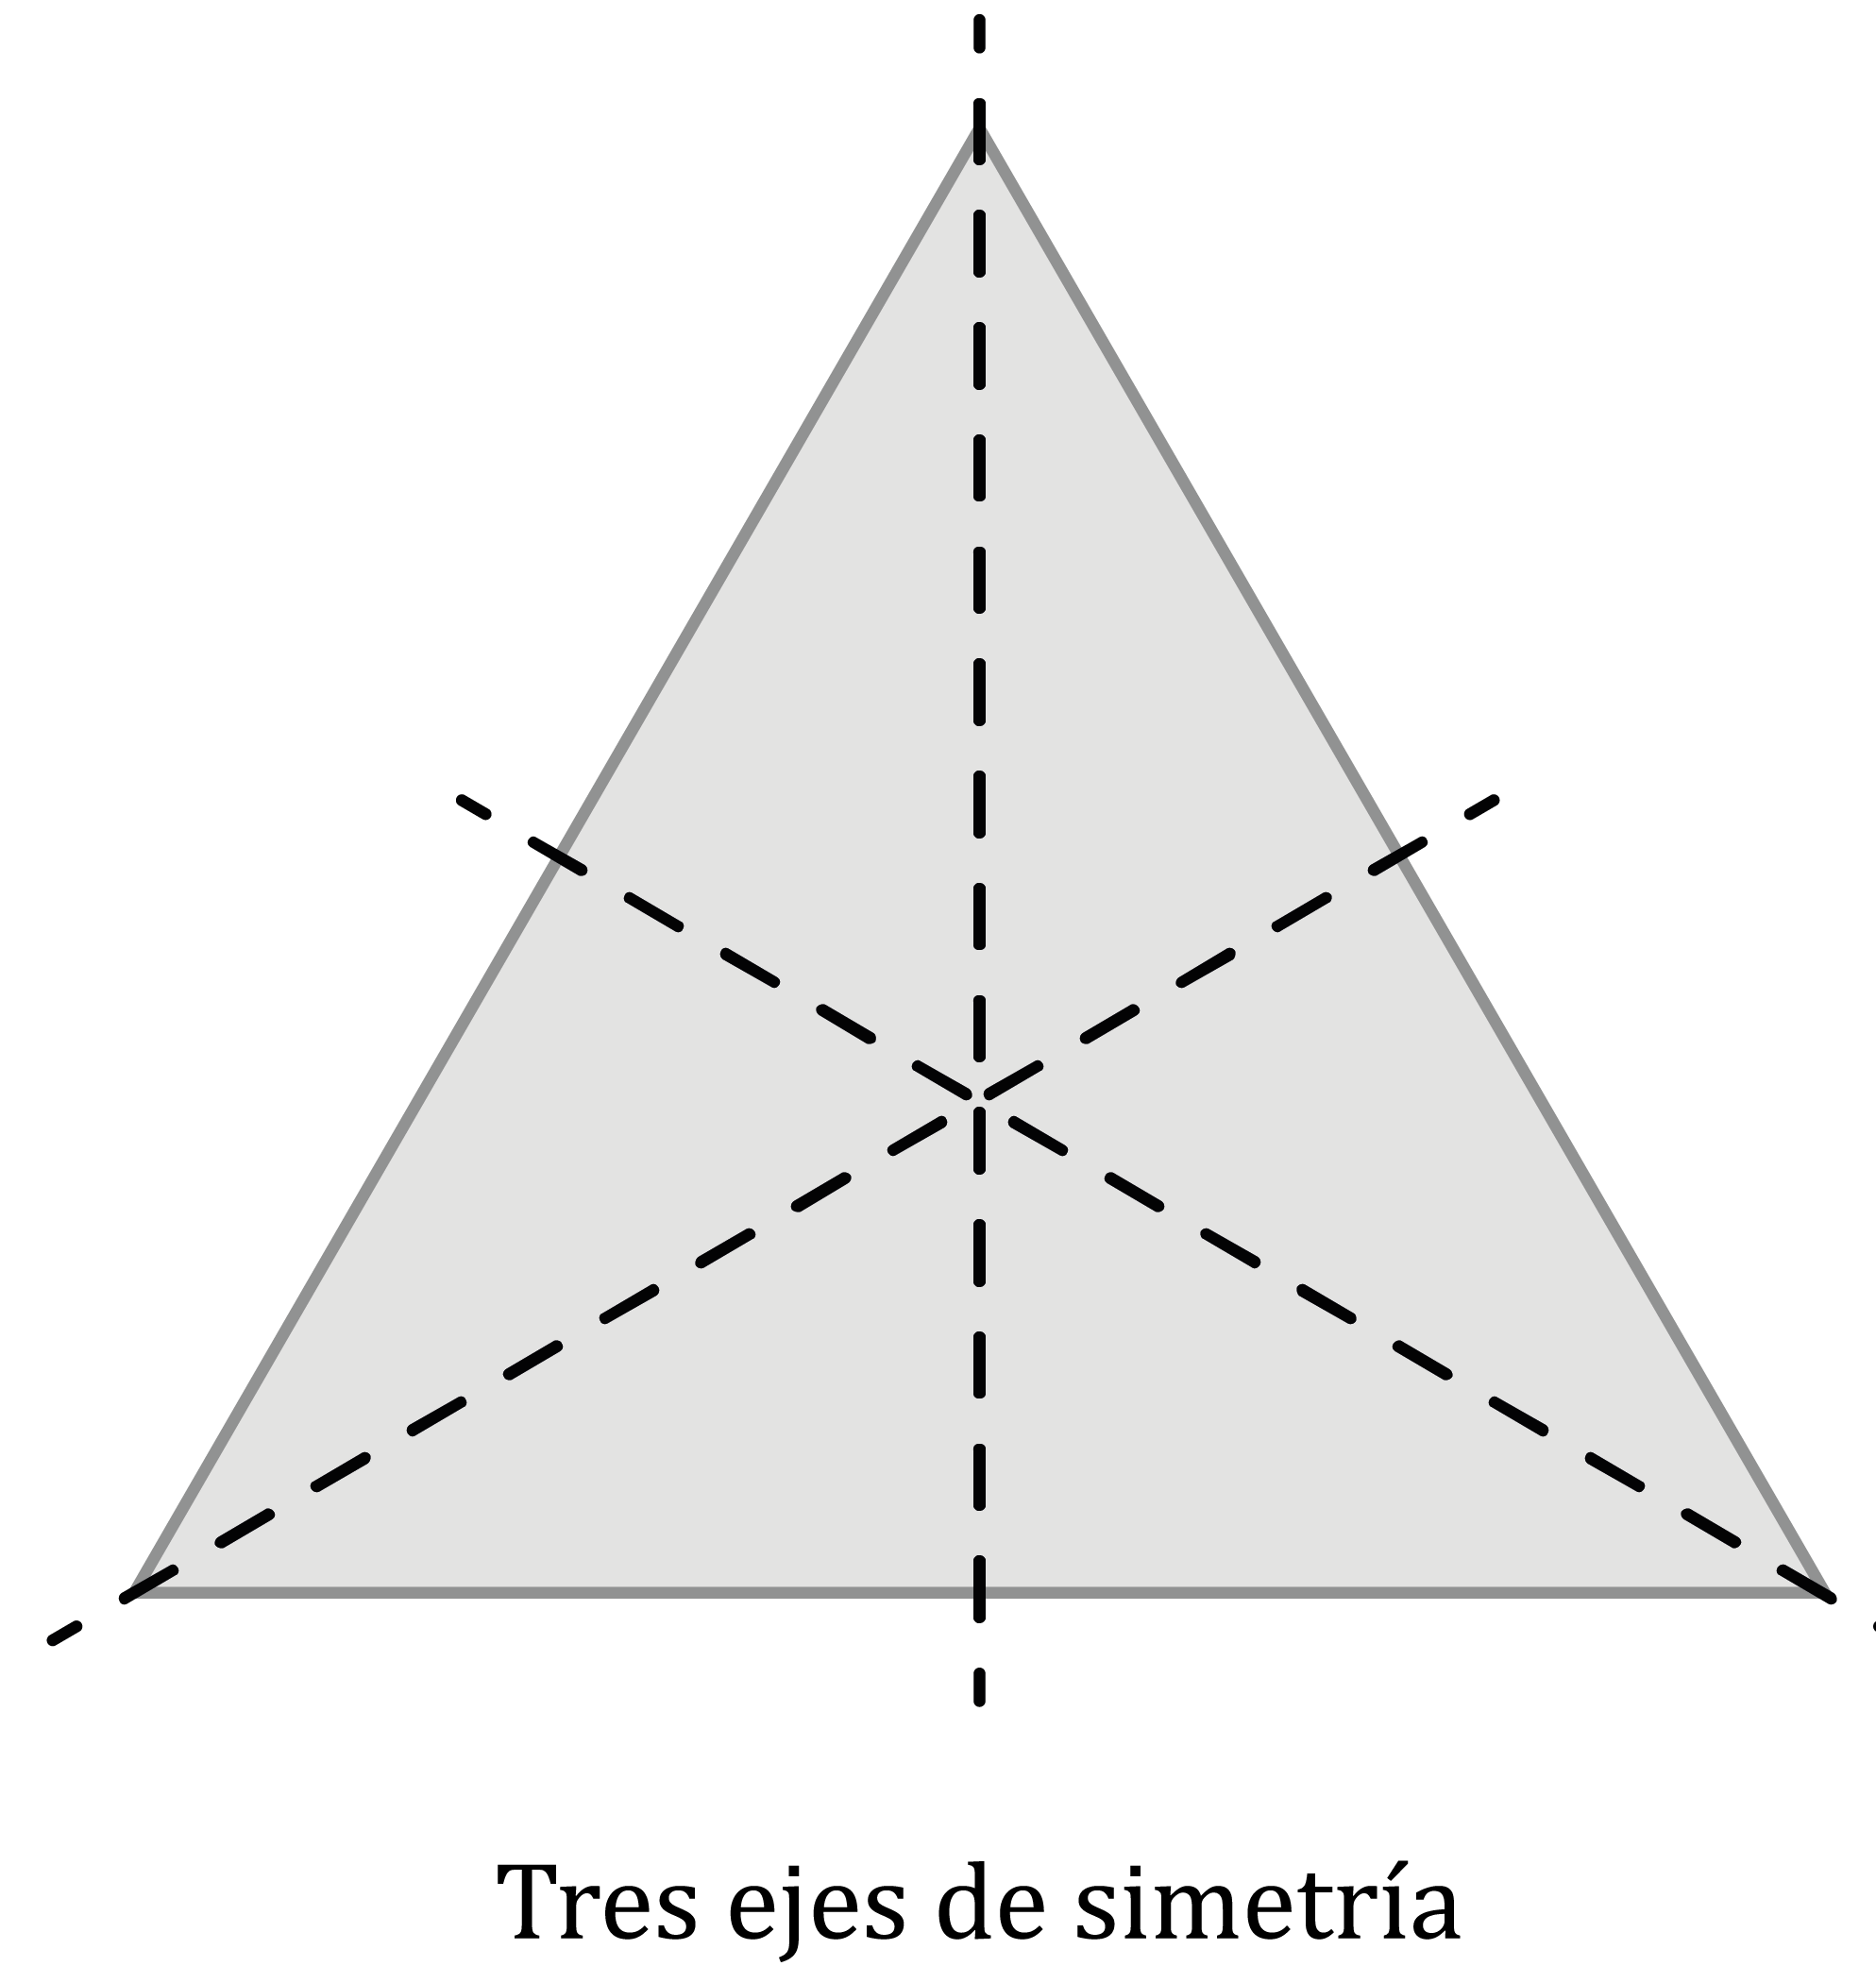 Matemáticas; Transformaciones; 3. ESO; Ejes y centro de simetría en polígonos regulares